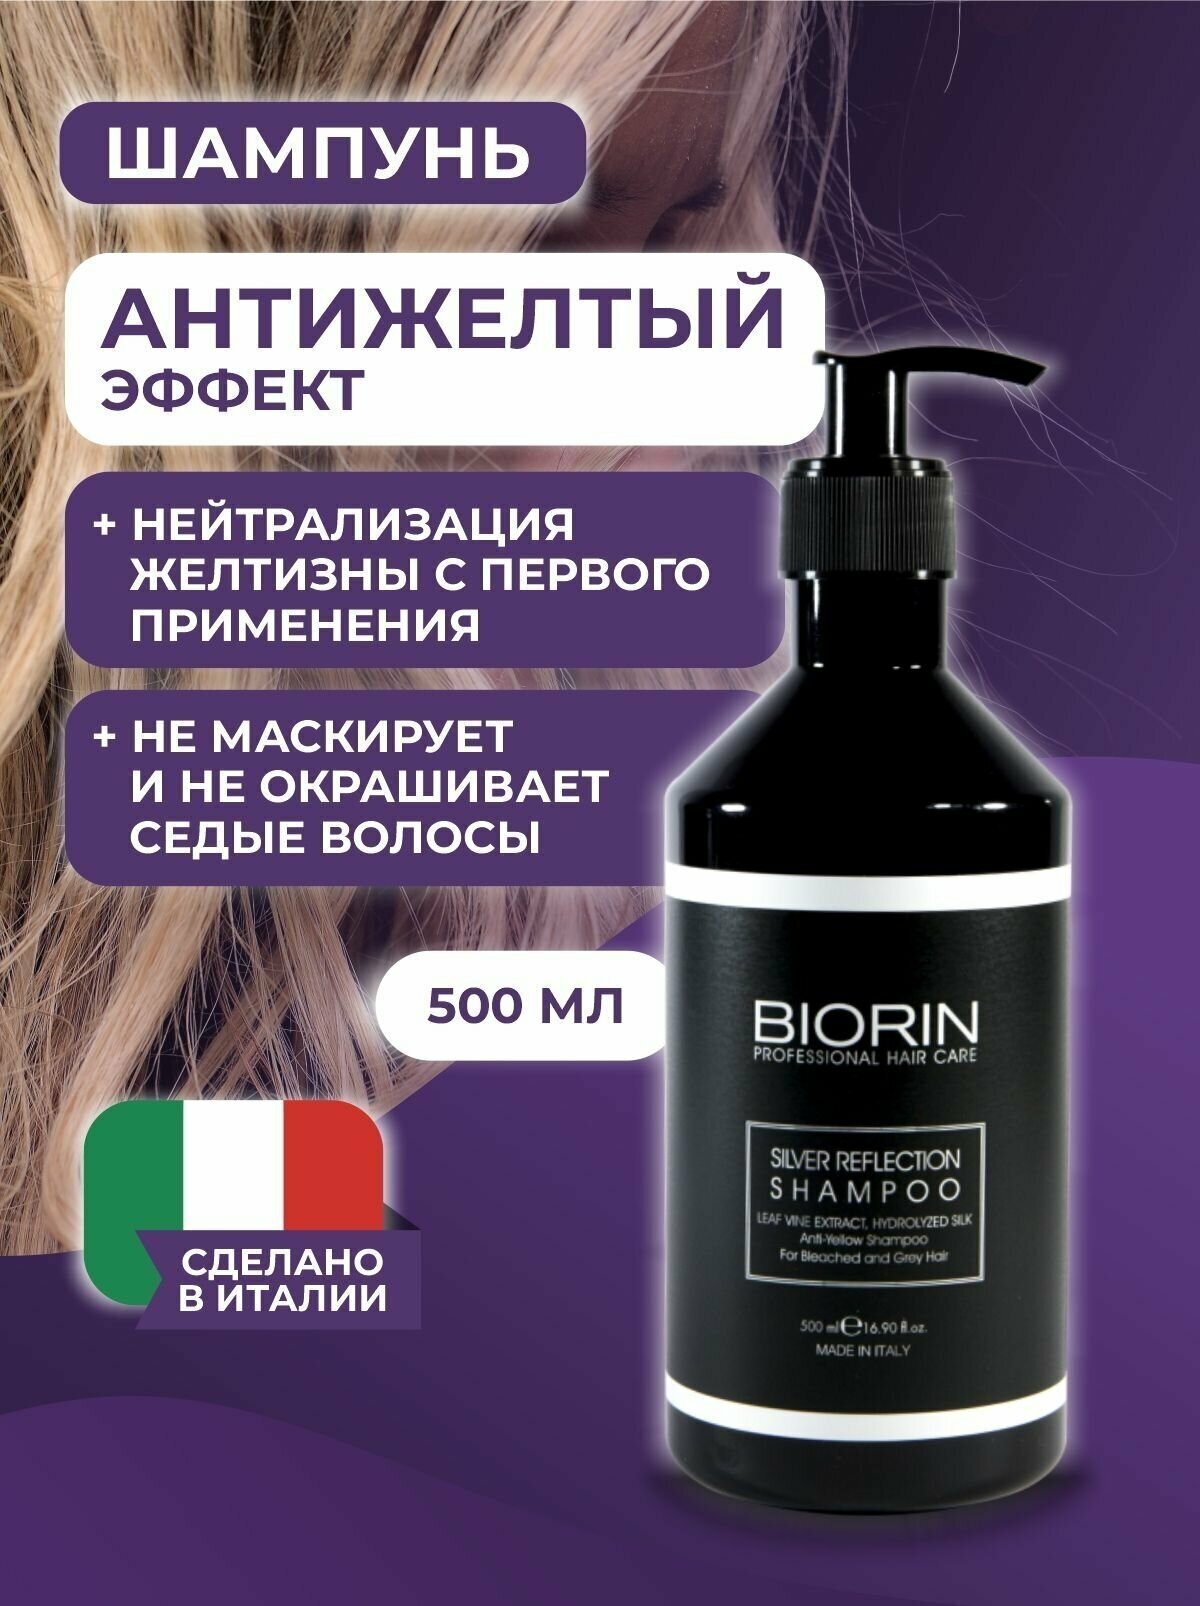 Профессиональный шампунь Биорин SILVER REFLECTION для седых и белых волос, антижелтый эффект с экстрактом листьев винограда 500 мл